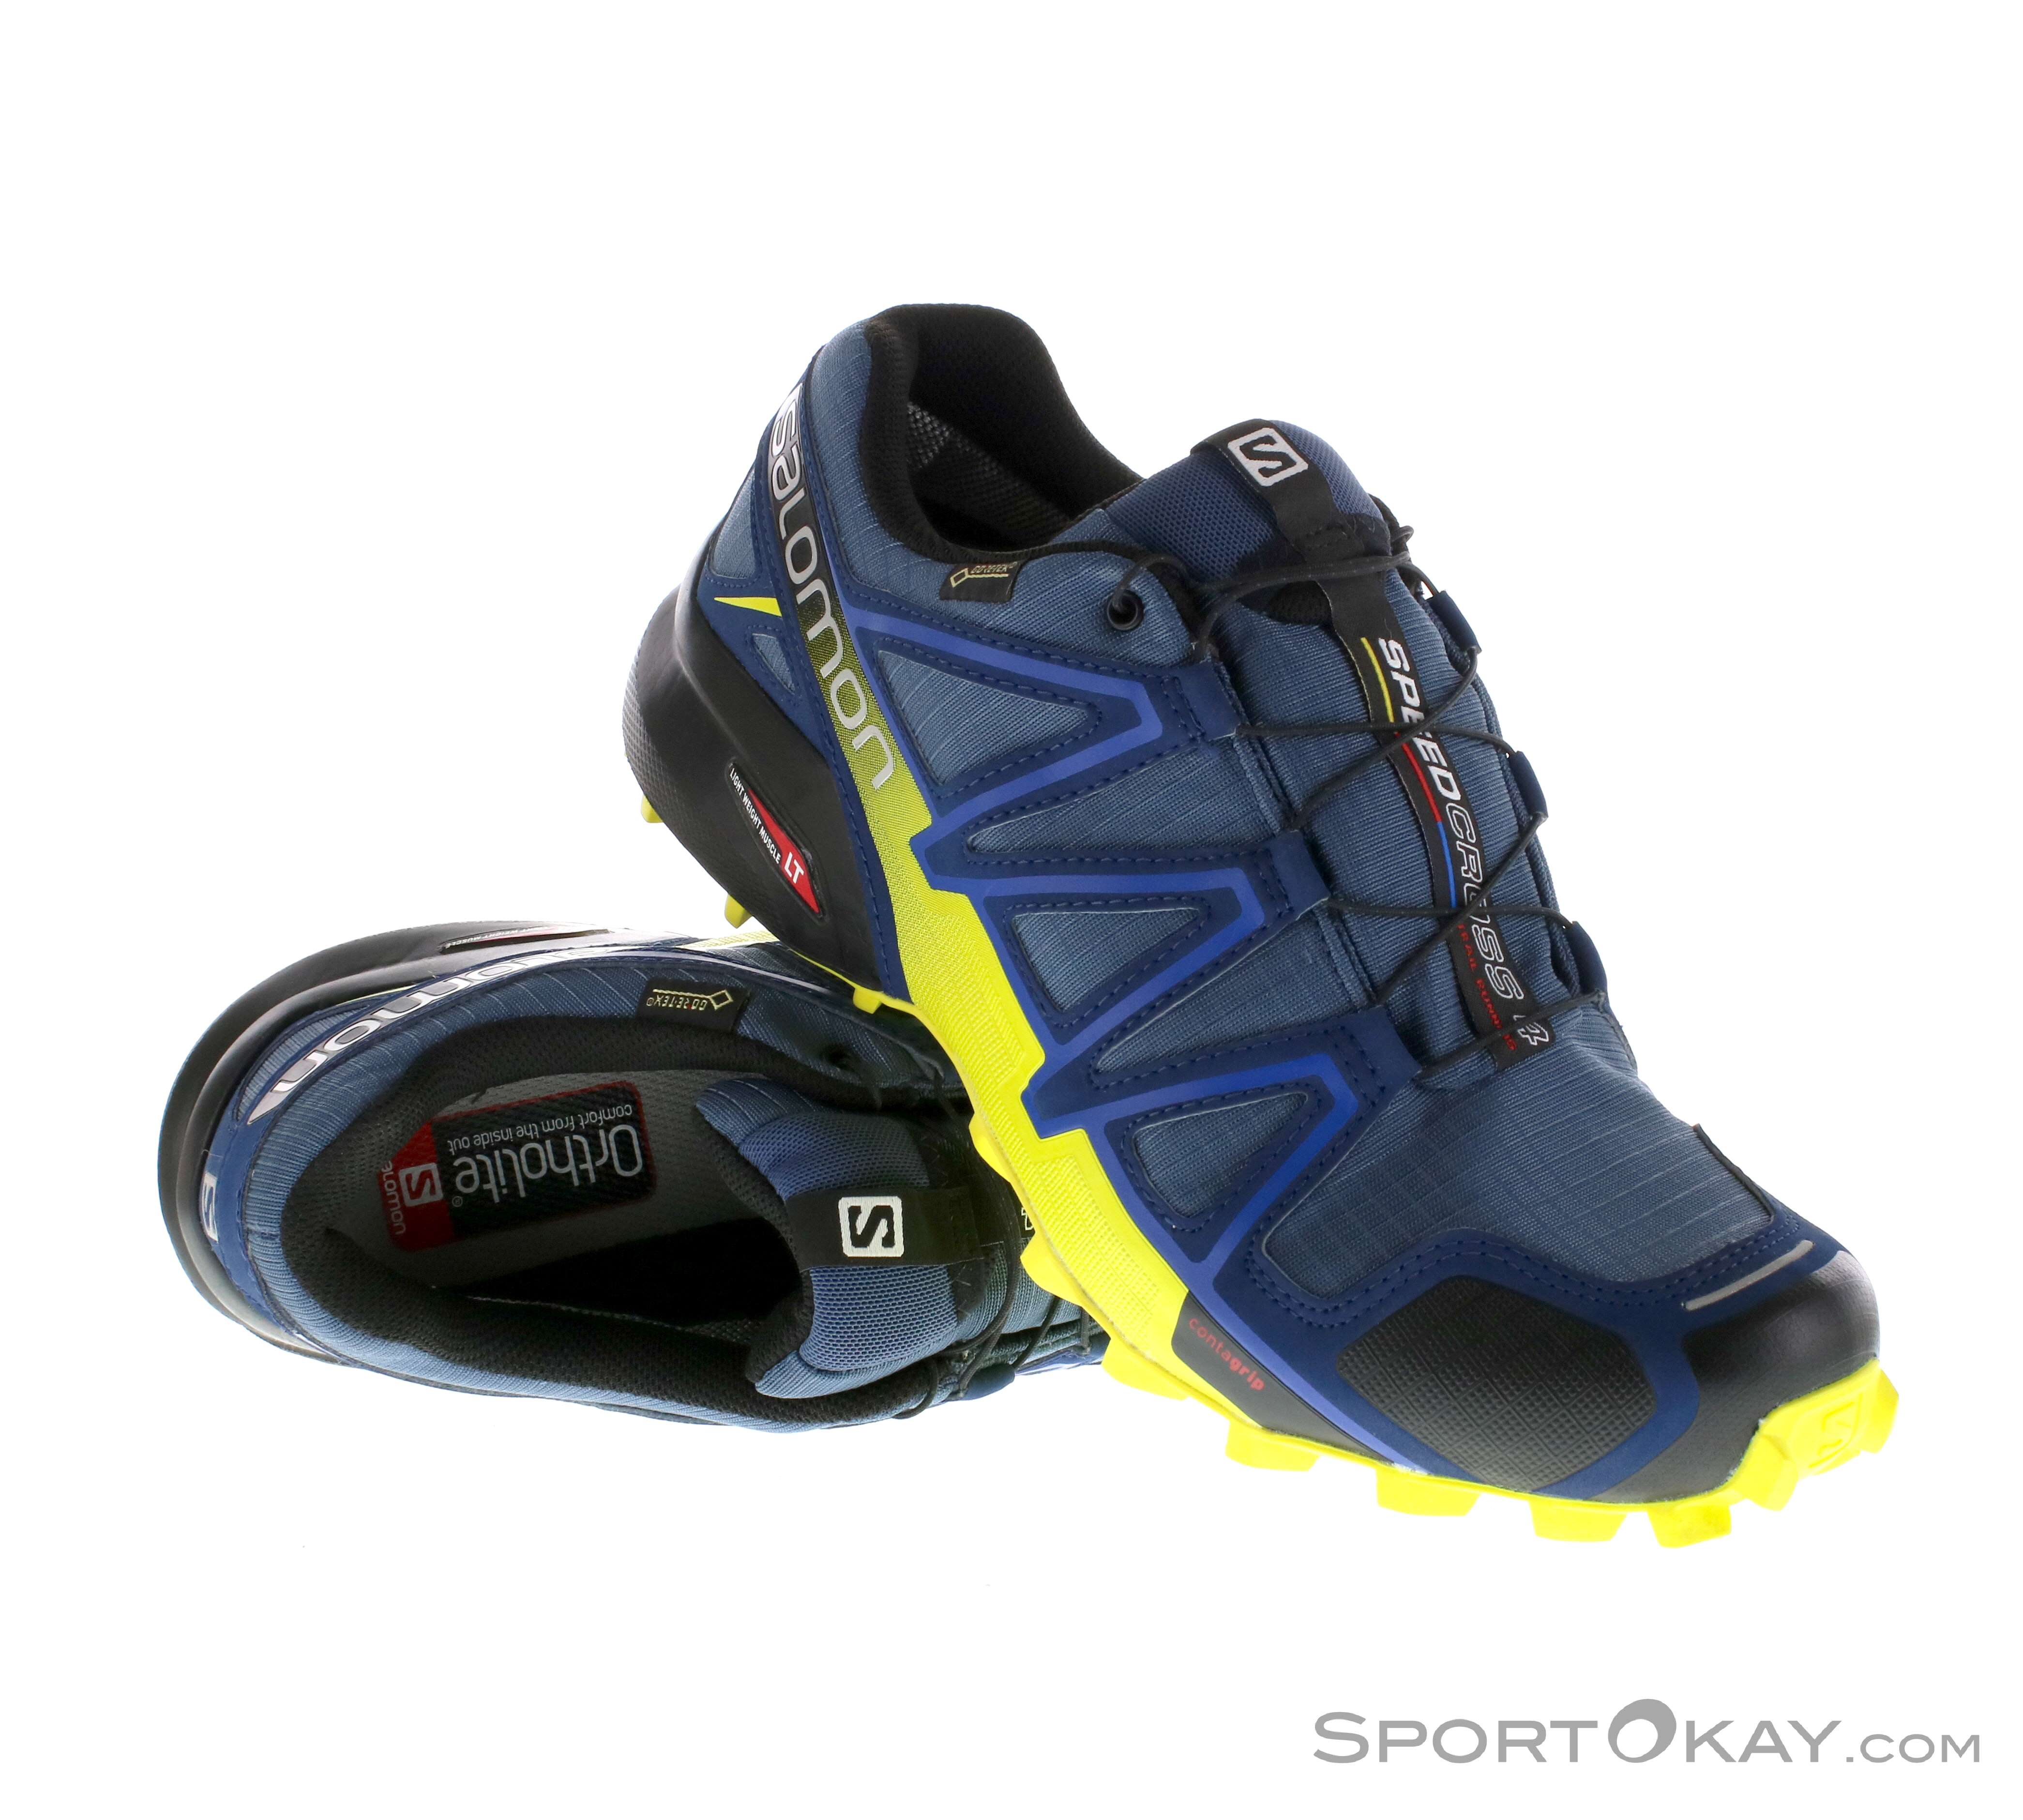 Salomon Speedcross 4 GTX Traillaufschuhe - Laufschuhe - Running - Alle